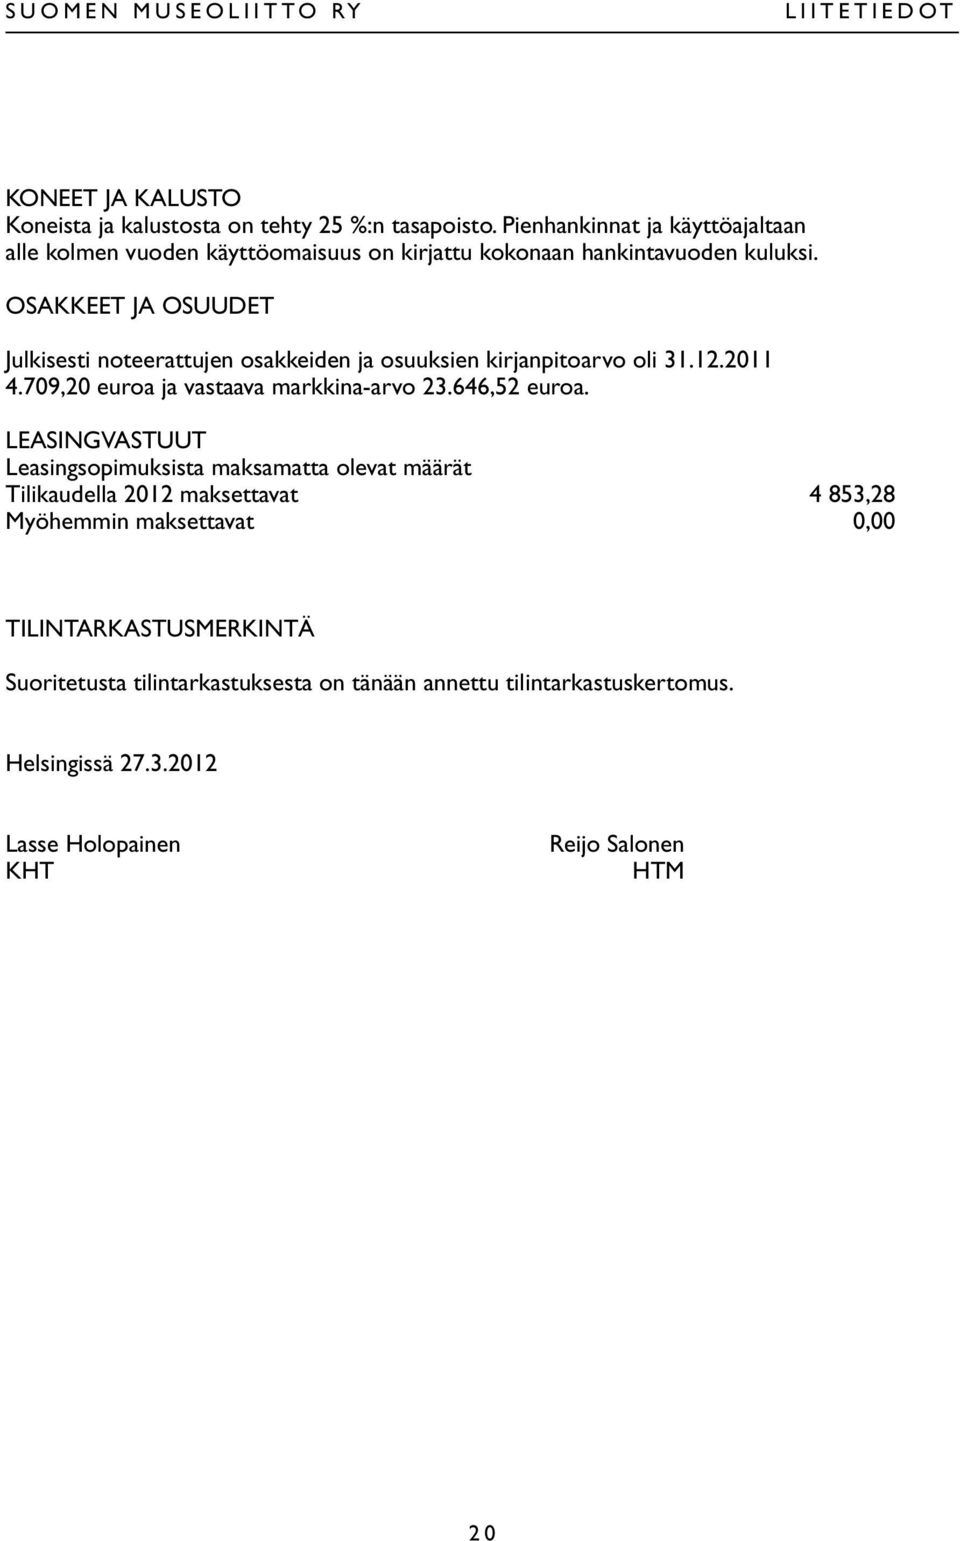 OSAKKEET JA OSUUDET Julkisesti noteerattujen osakkeiden ja osuuksien kirjanpitoarvo oli 31.12.2011 4.709,20 euroa ja vastaava markkina-arvo 23.646,52 euroa.